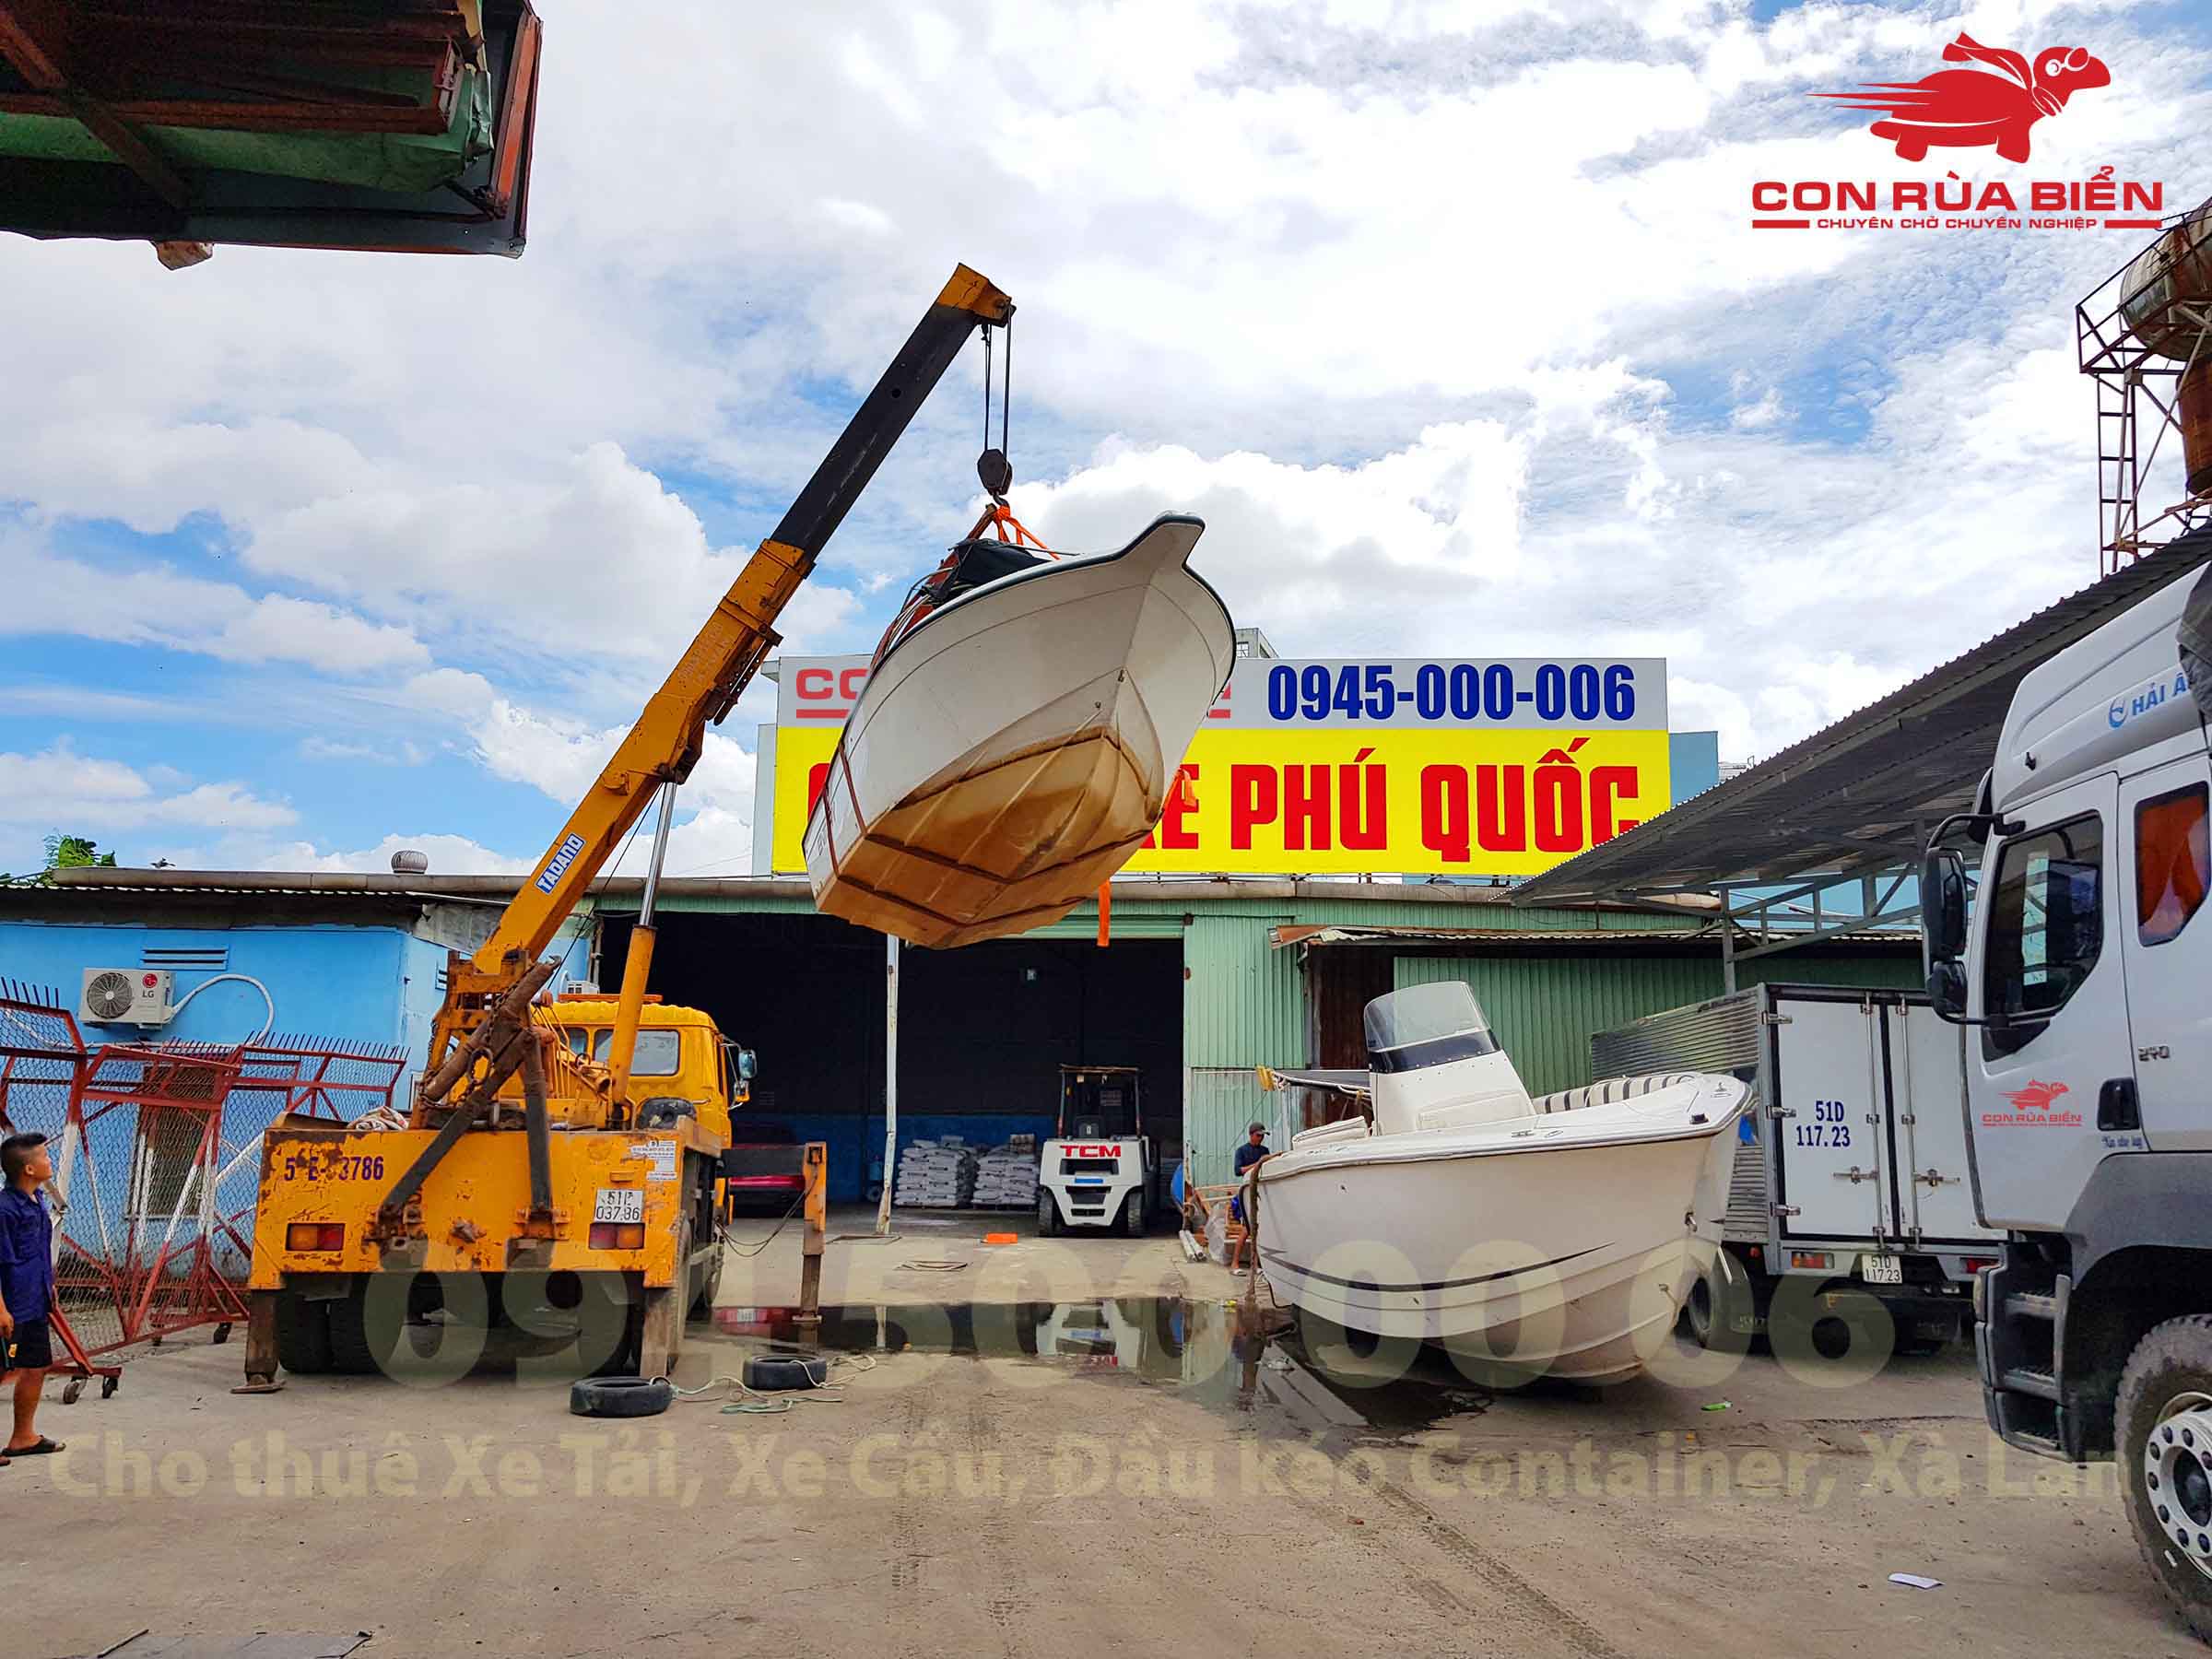 Van chuyen cano di Phu Quoc 5